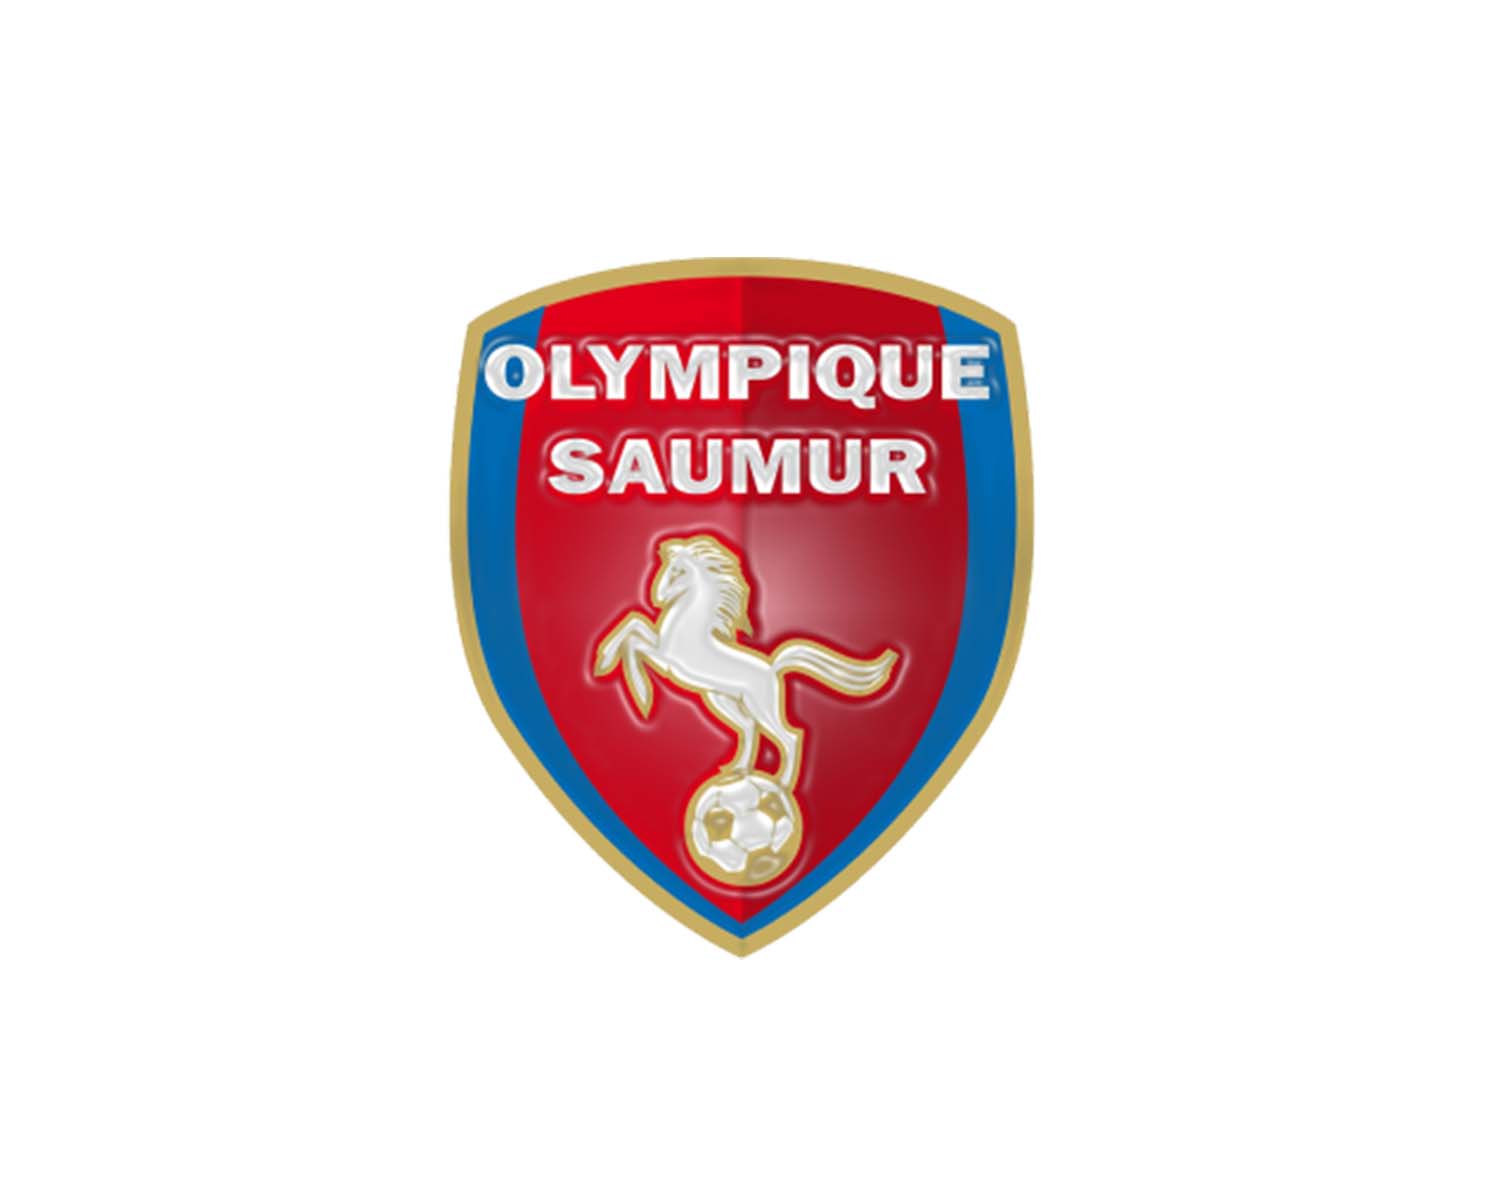 Olympique Lyonnais Féminin: 11 Football Club Facts 